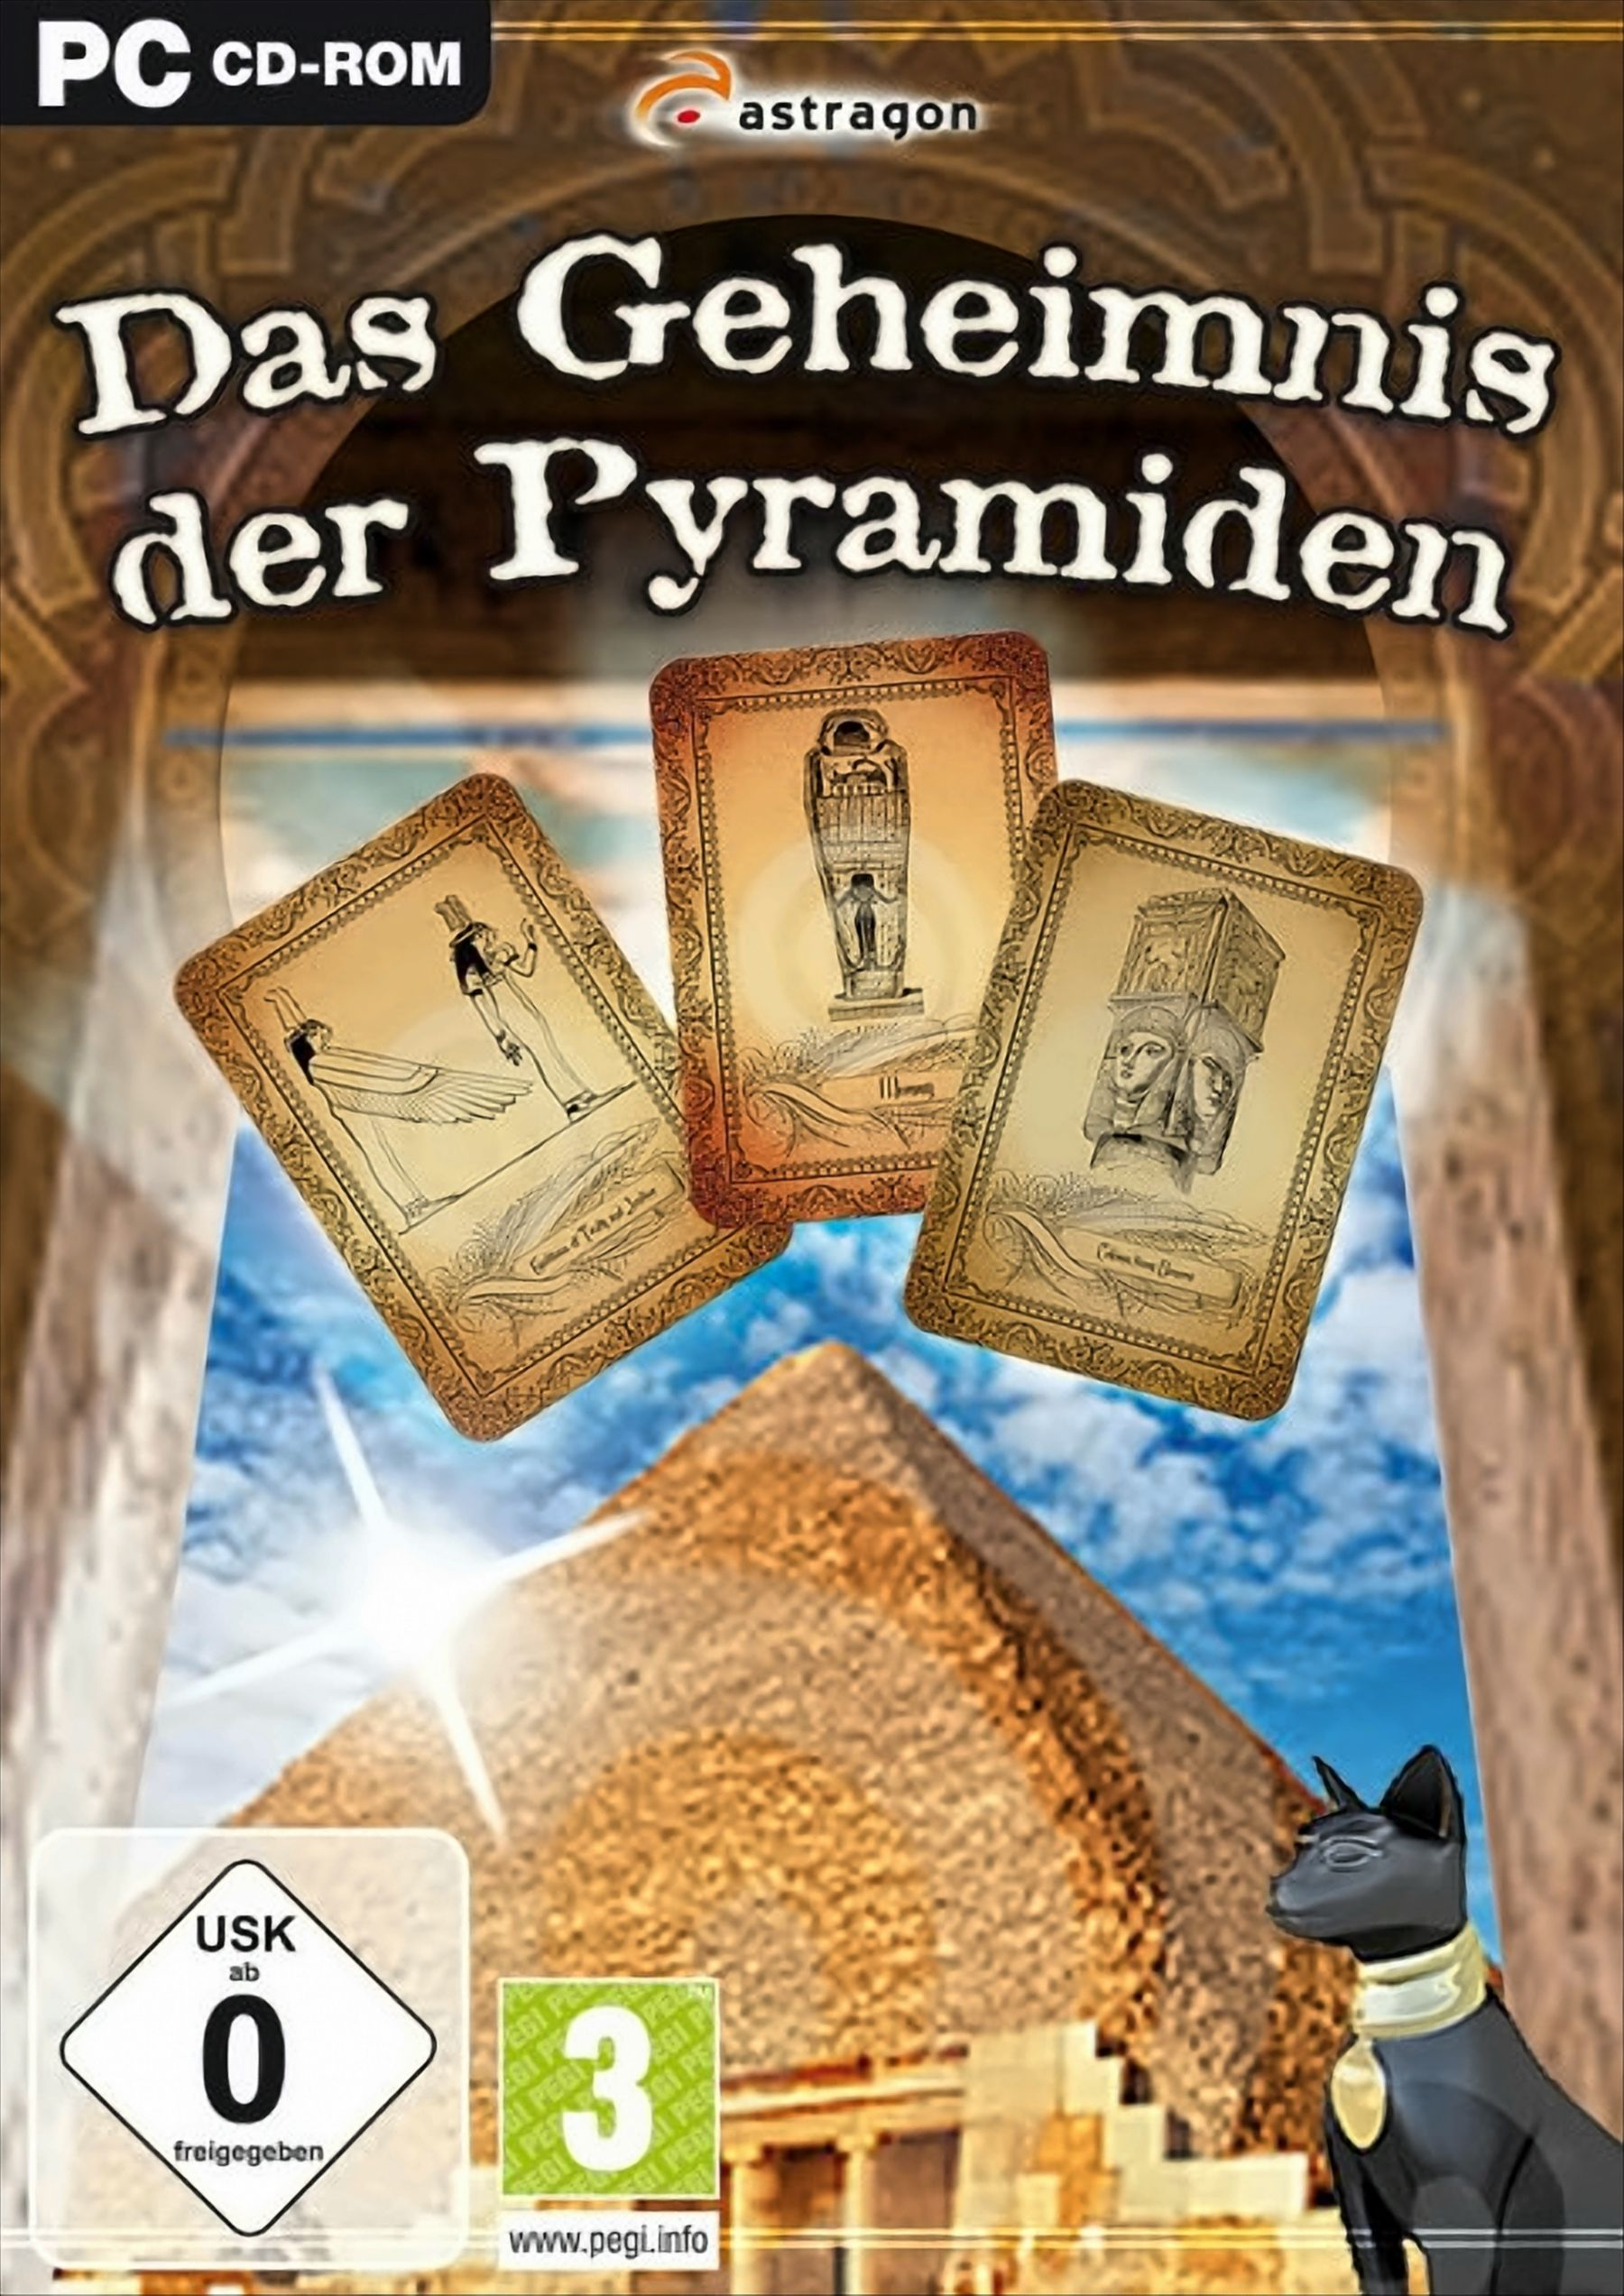 Geheimnis Pyramiden [PC] Das - der